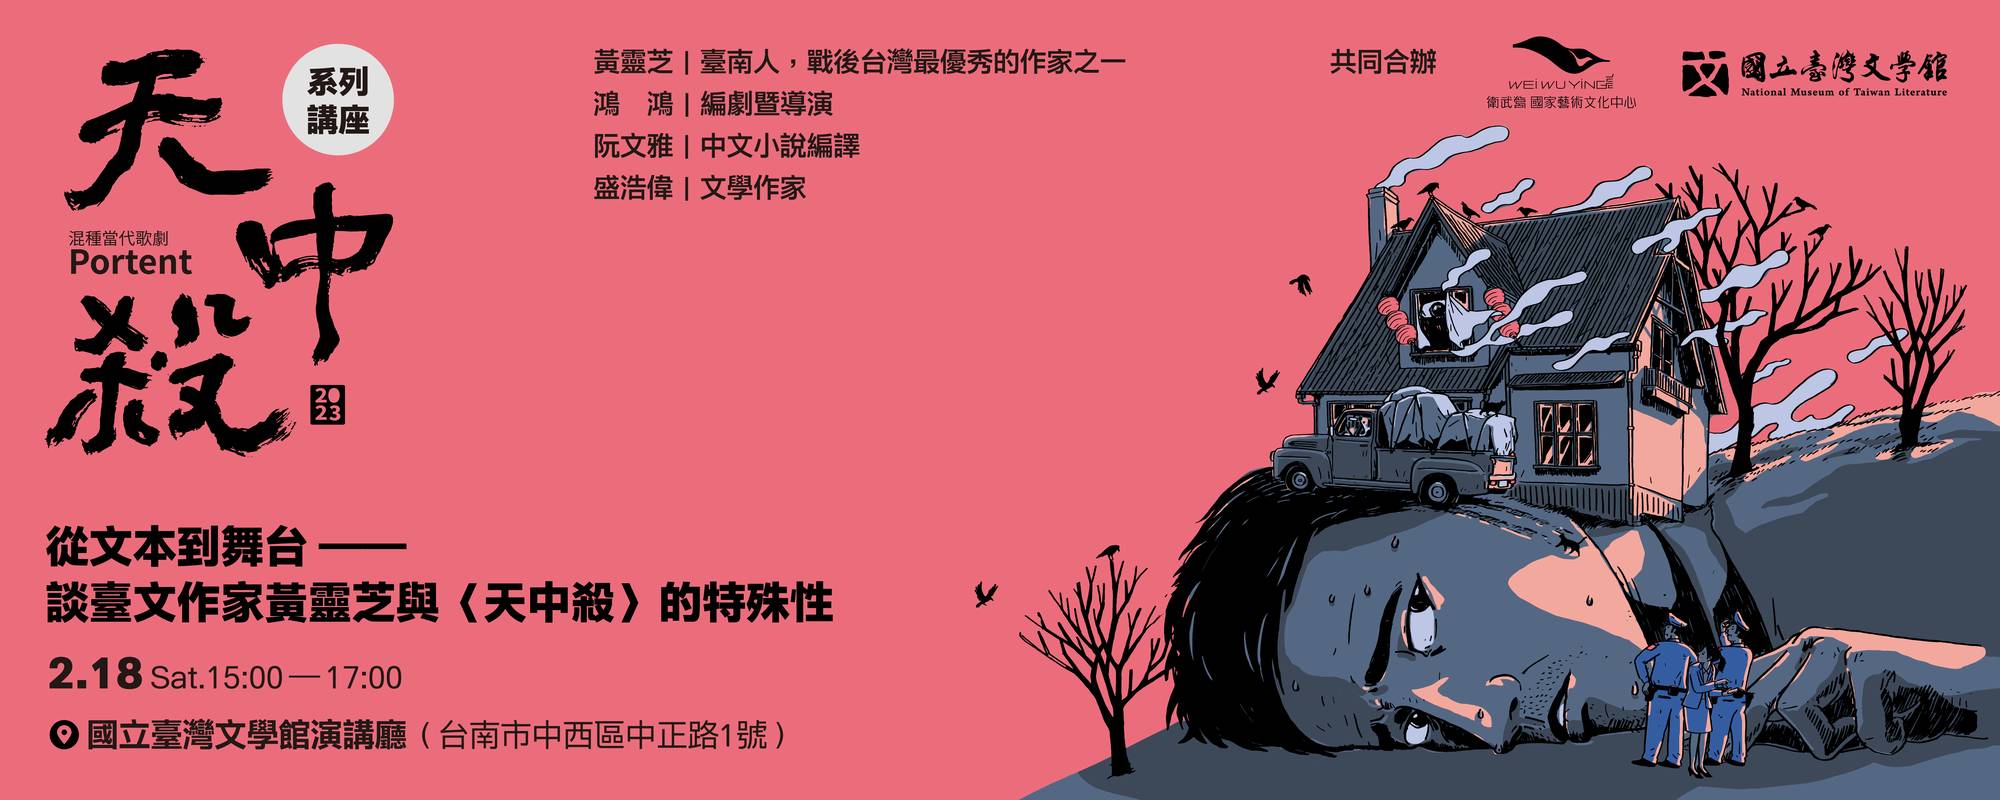 《天中殺》 系列講座「從文本到舞台──談臺文作家黃靈芝與〈天中殺〉的特殊性」